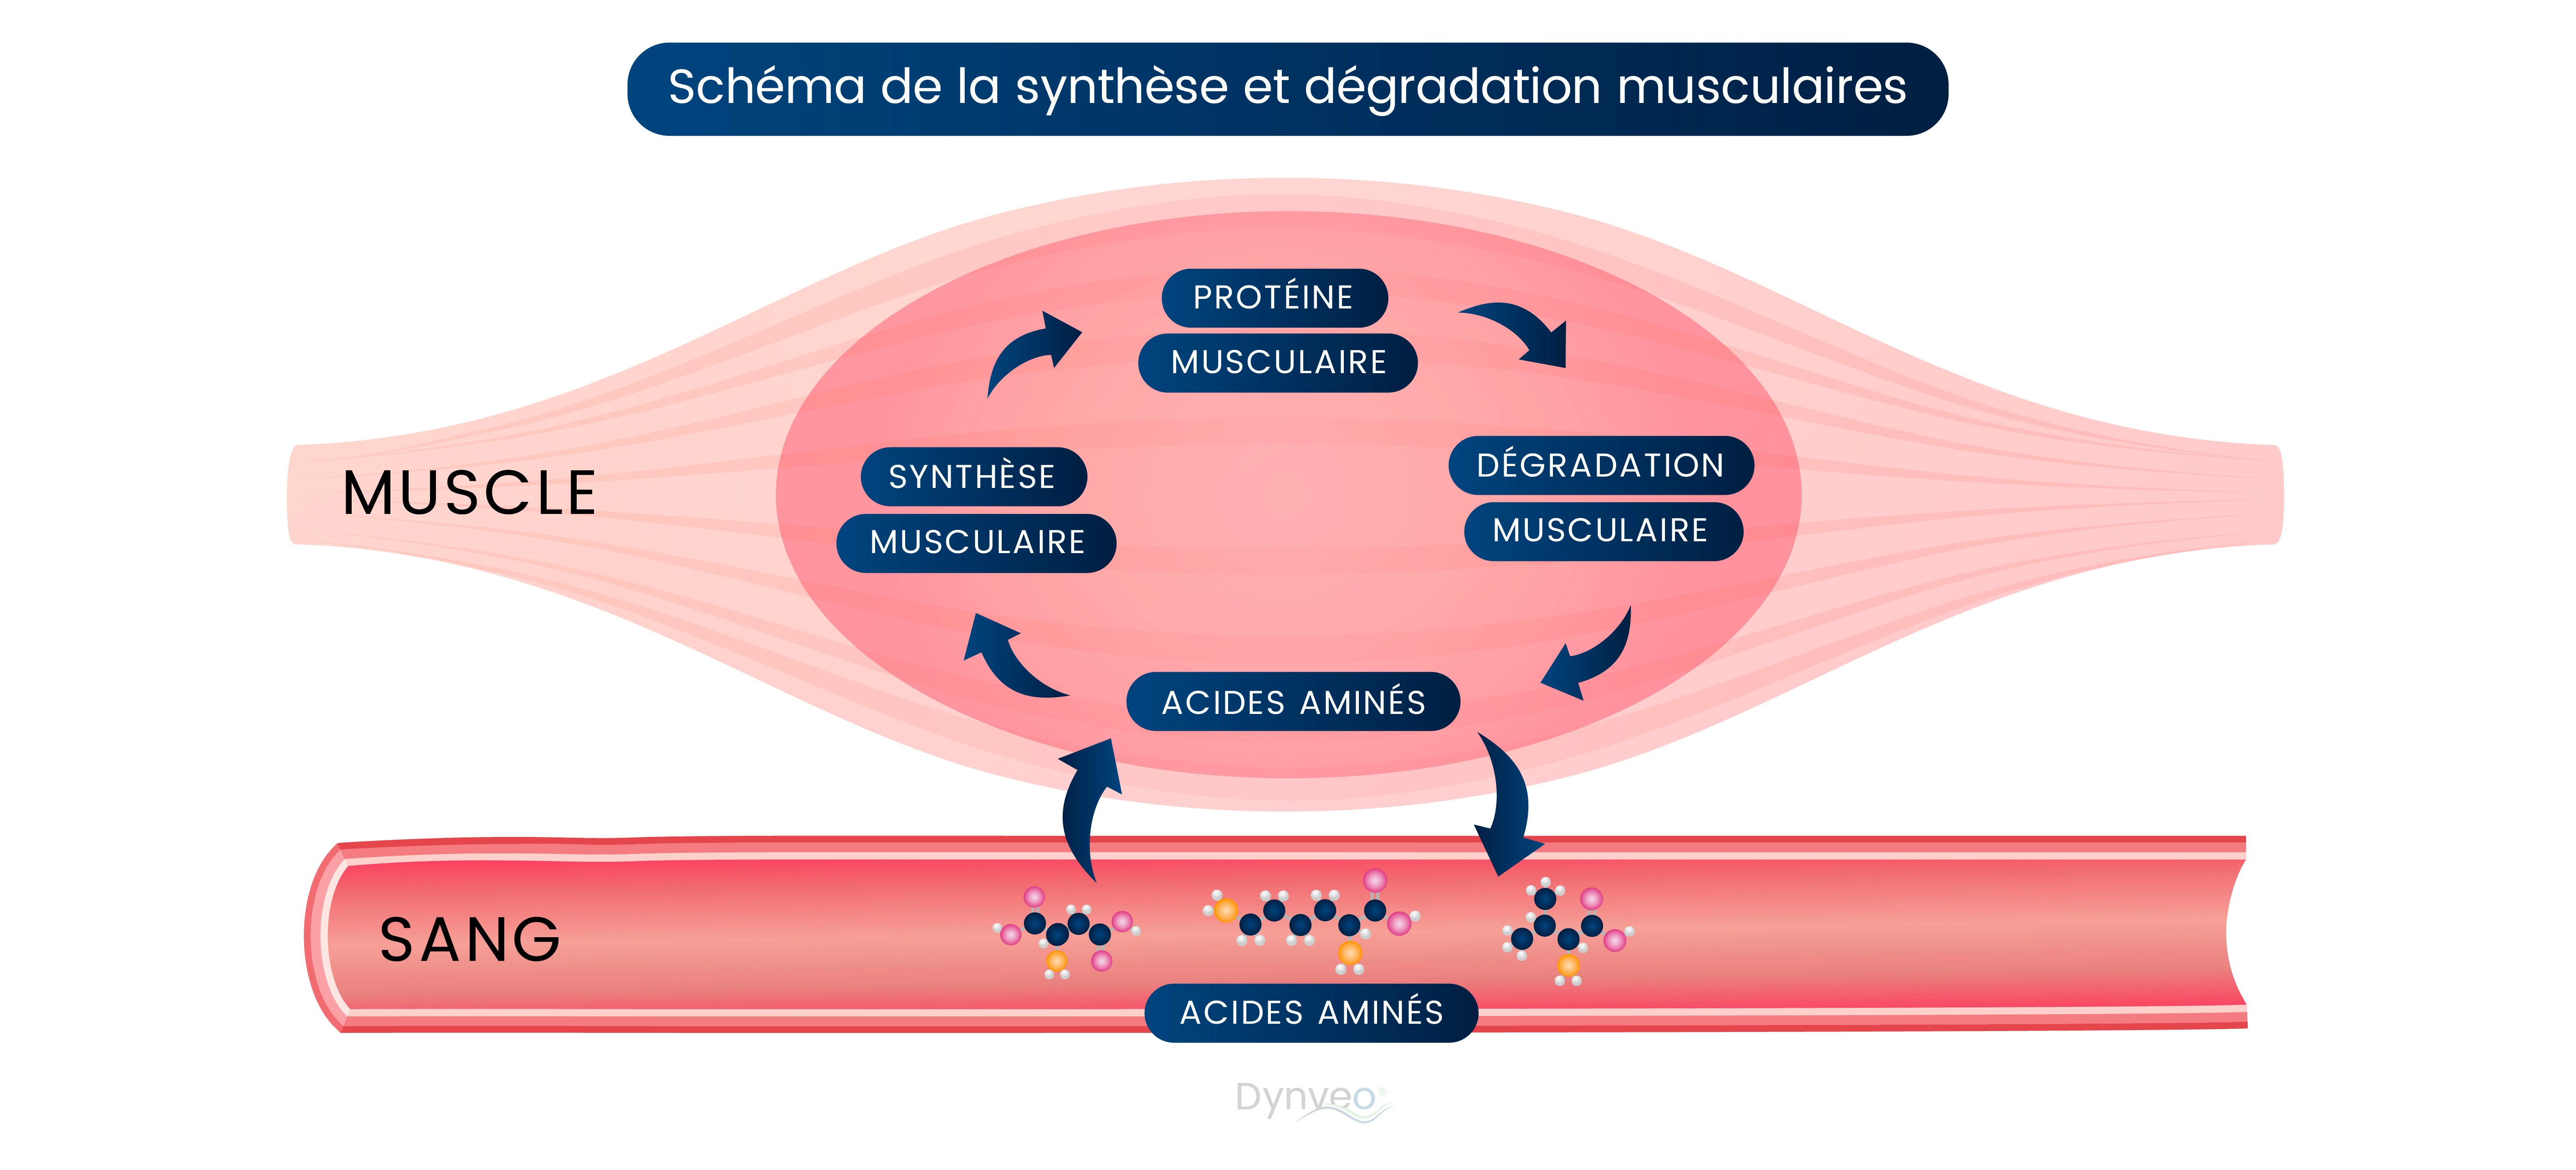 Schéma synthèse et dégradation musculaire